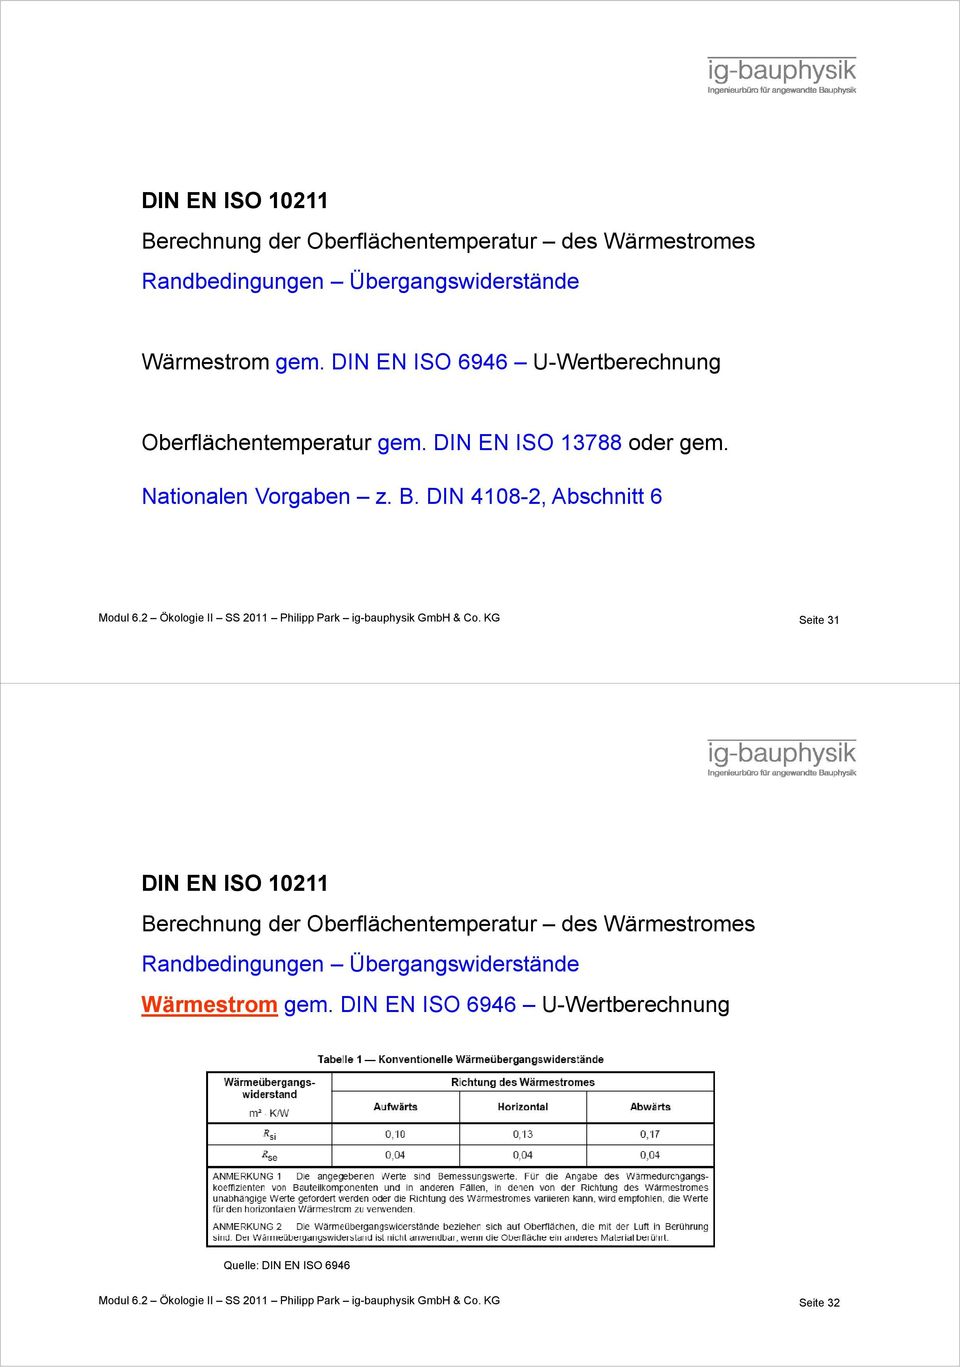 2 Ökologie II SS 2011 Philipp Park ig-bauphysik GmbH & Co. KG Seite 31  DIN EN ISO 6946 U-Wertberechnung Quelle: DIN EN ISO 6946 Modul 6.